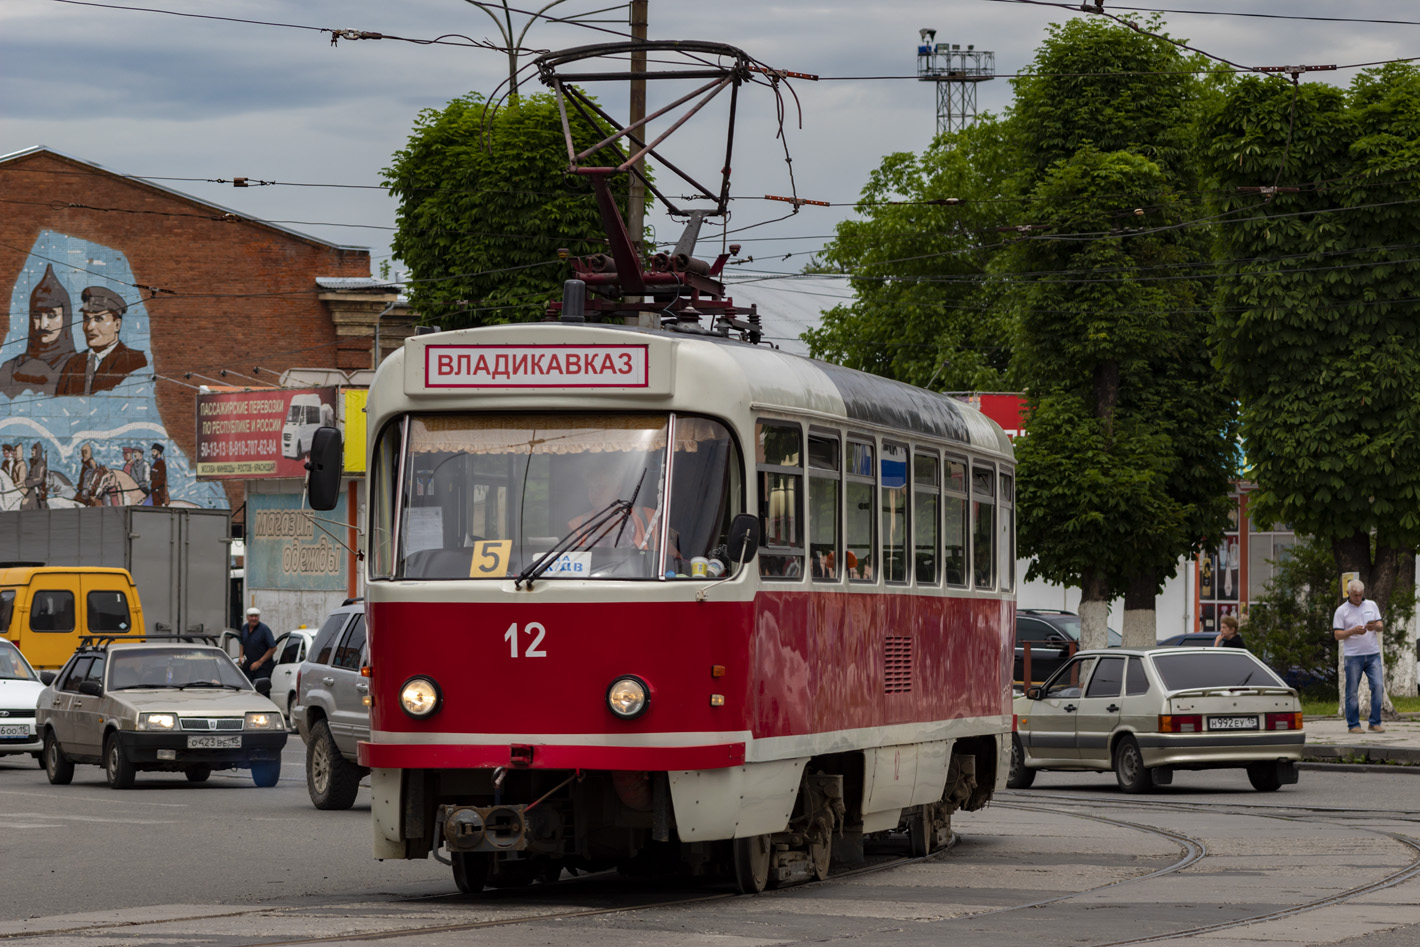 Владикавказ, Tatra T4DM № 12